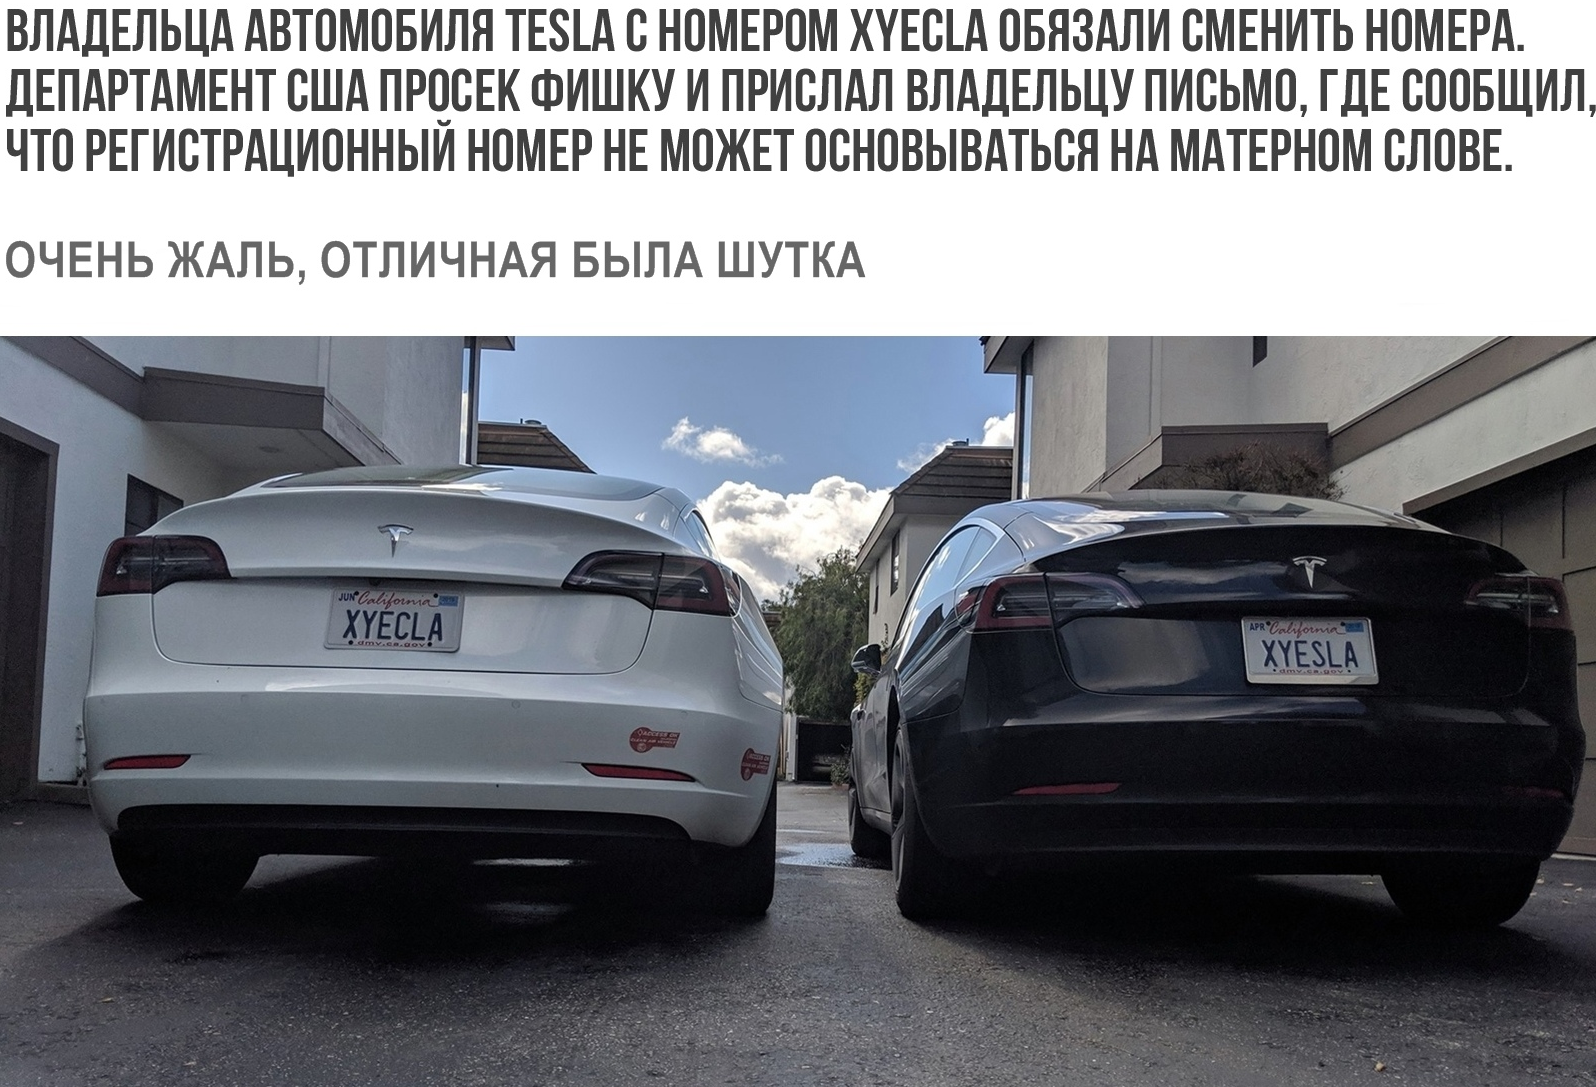 New Tesla-Xyecla. - Tesla, Elon Musk, Number, Wordplay